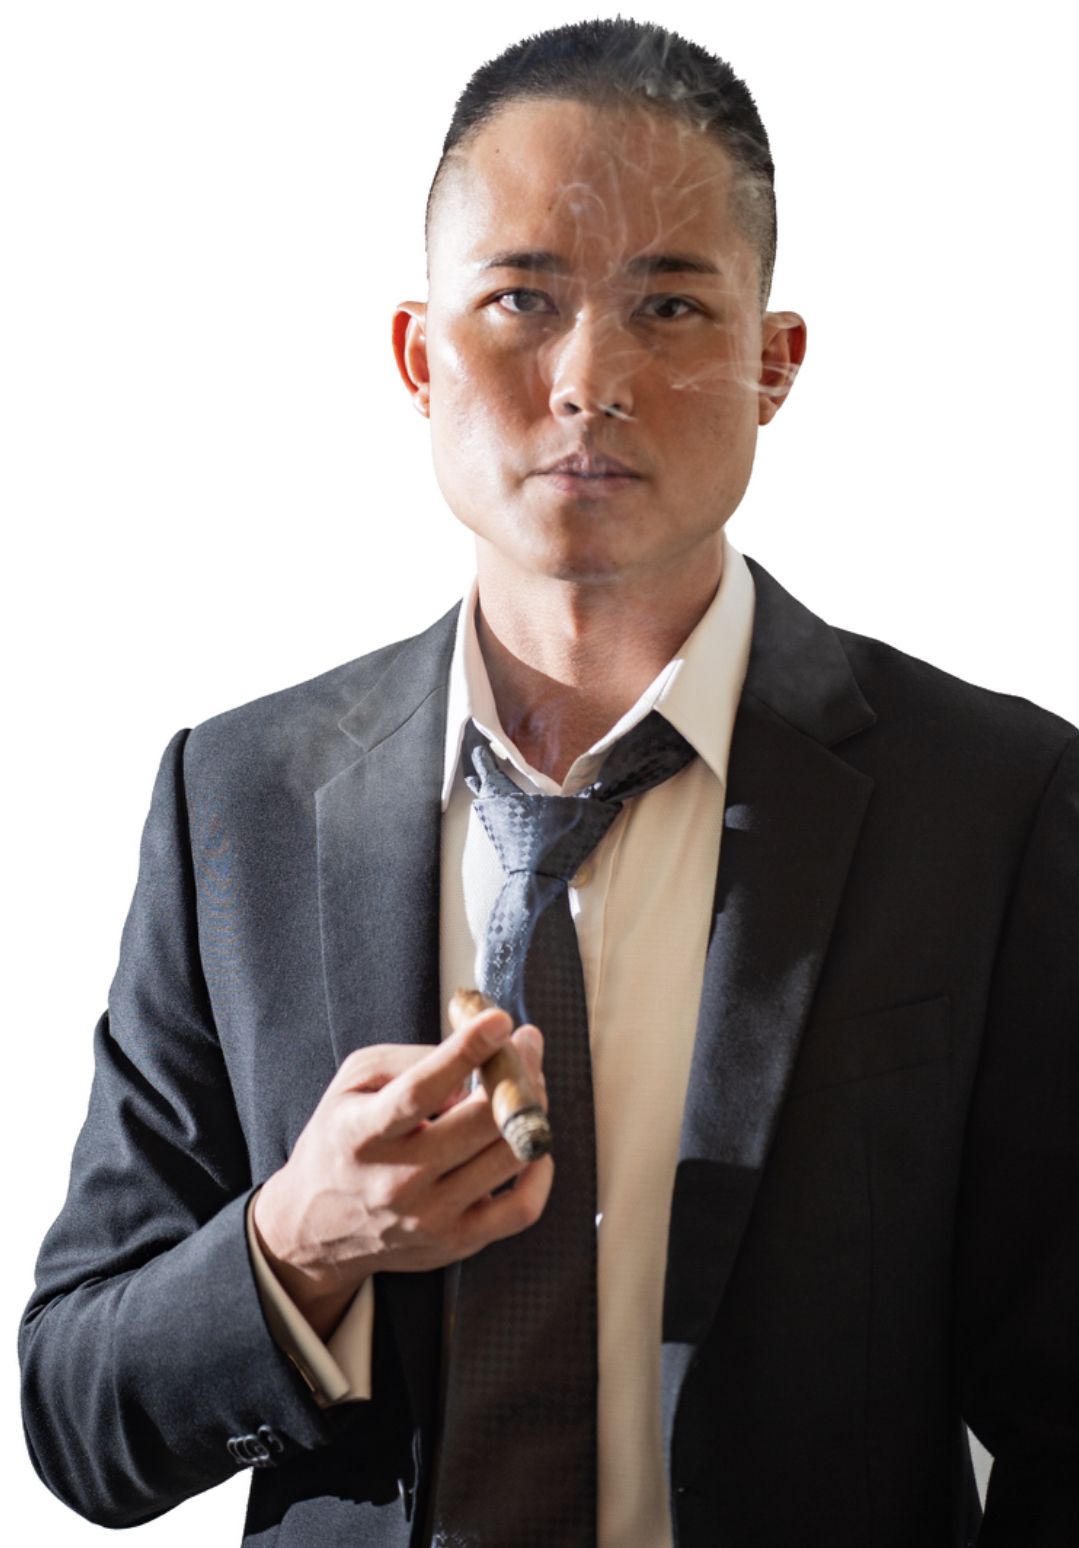 Lawyer Benjamin Li Yong Le, L’Avocat Law LLC Singapore